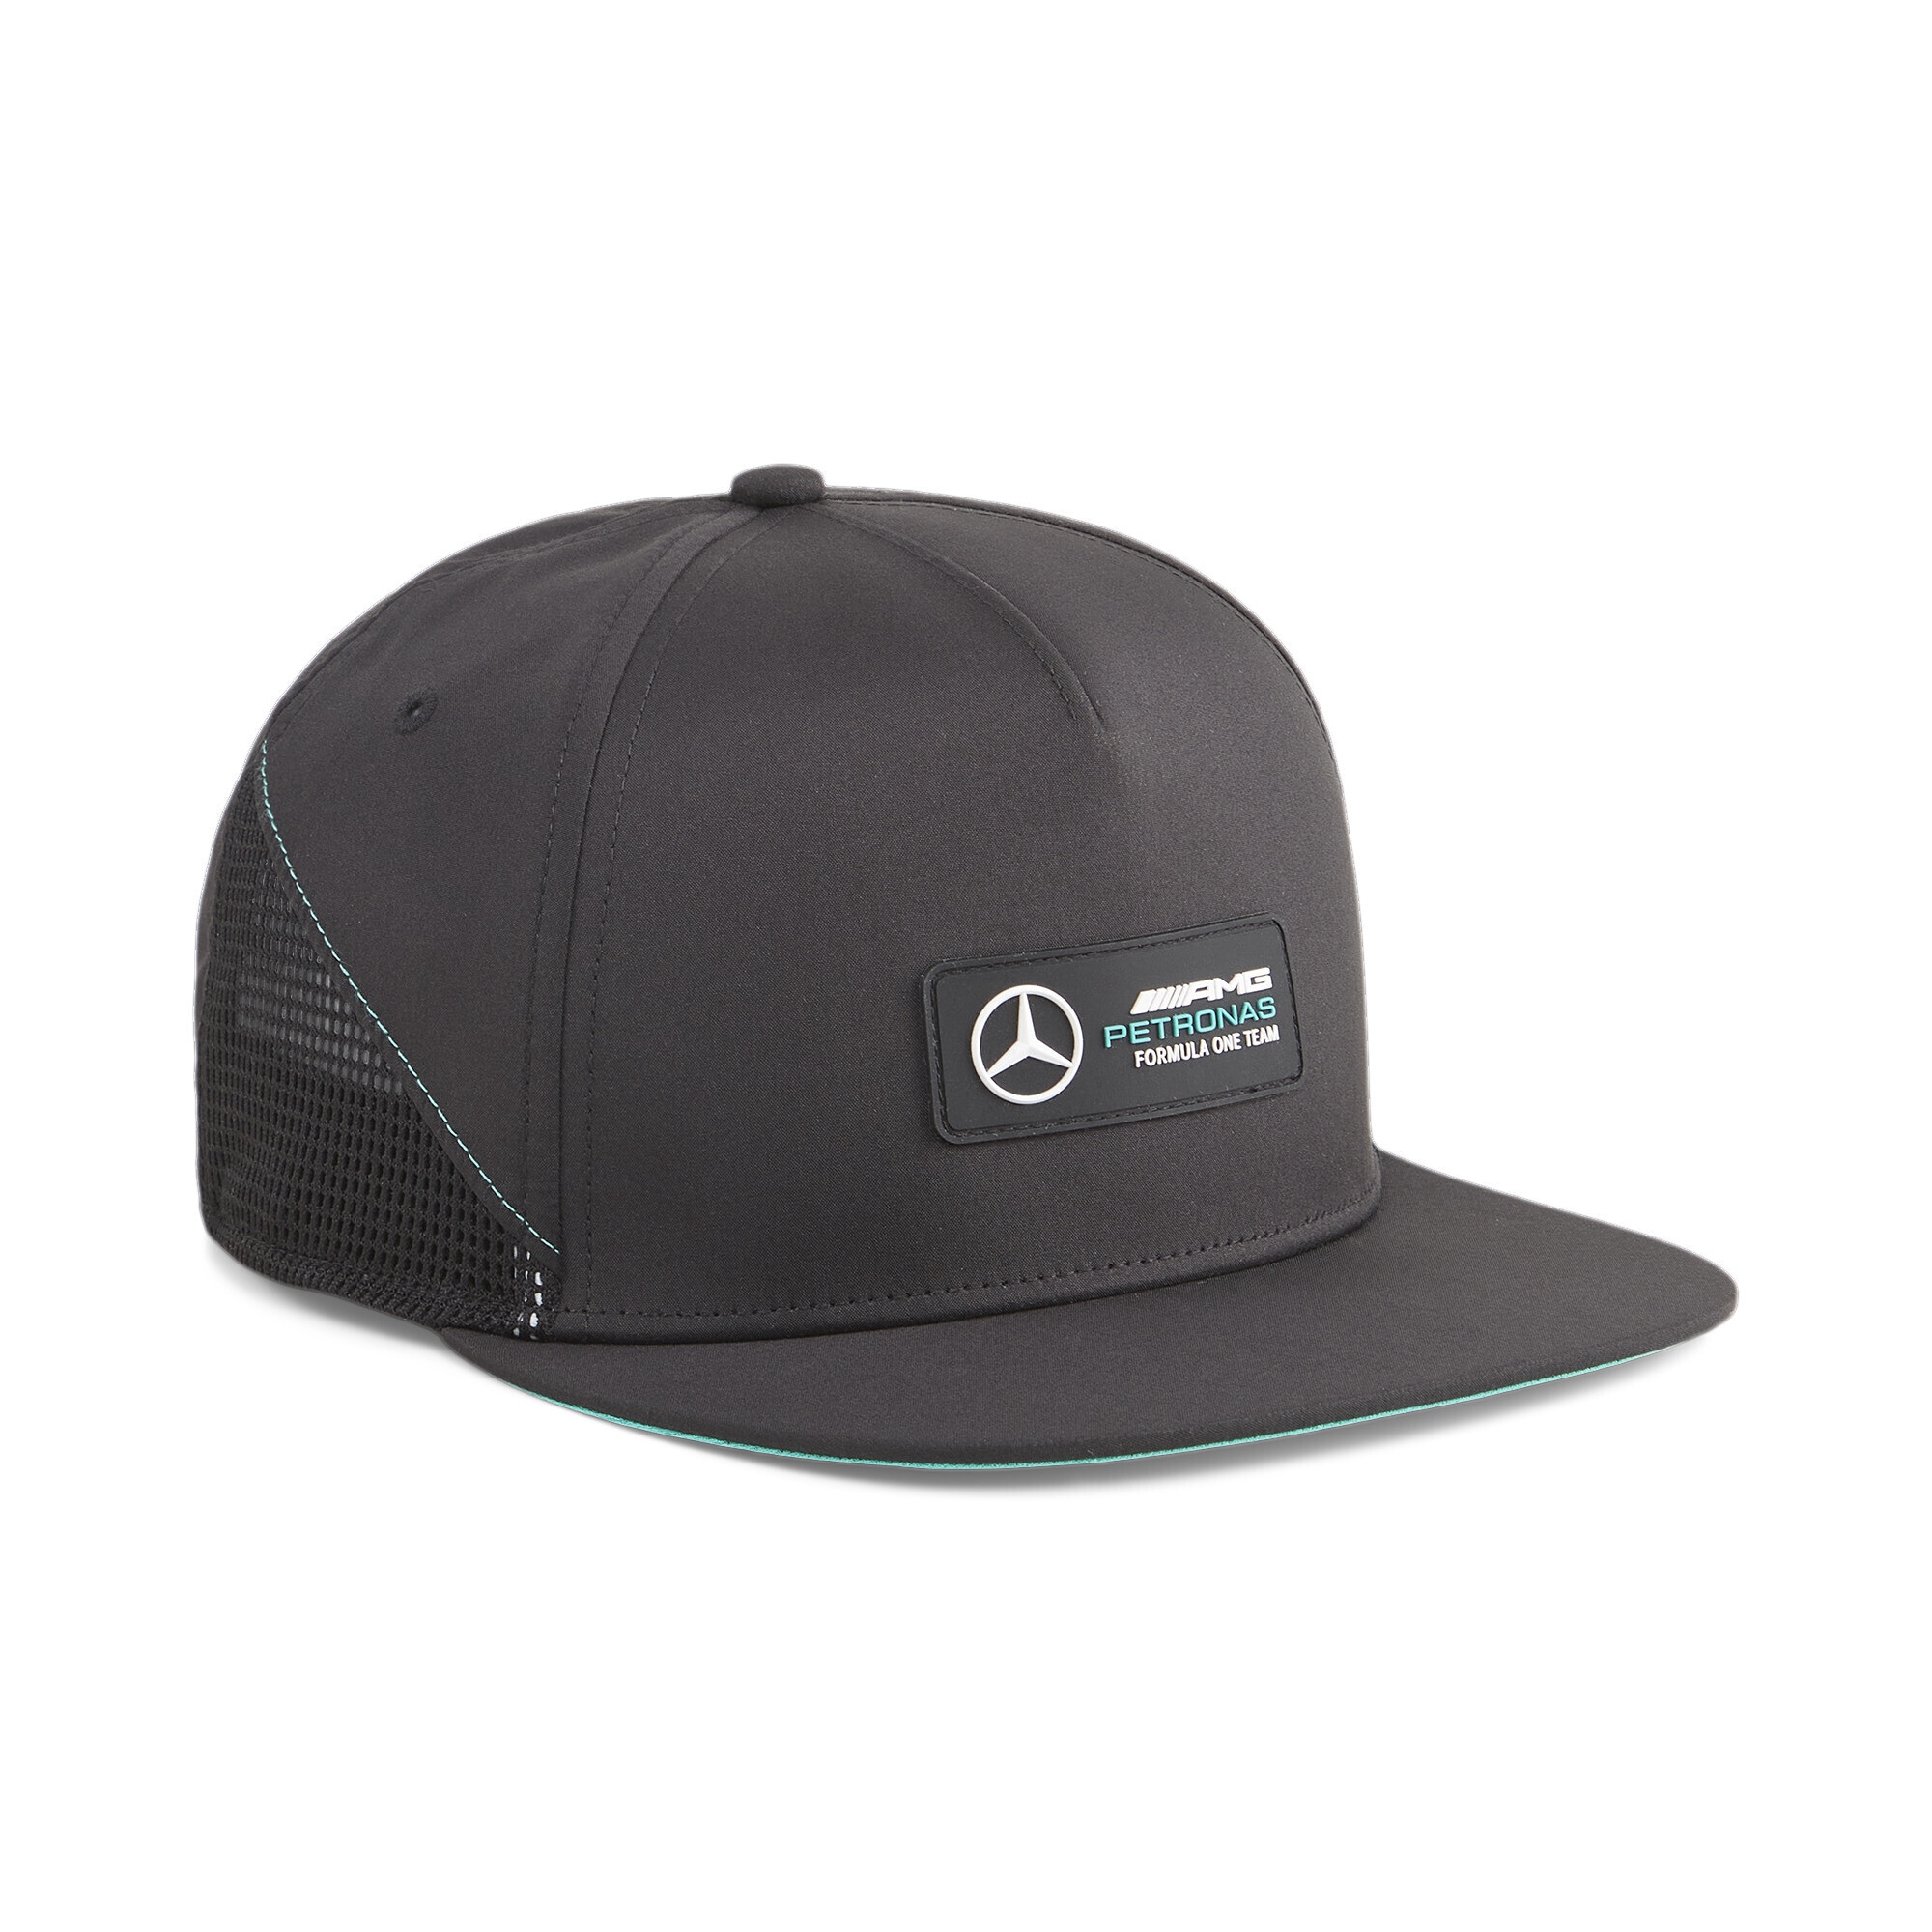 »Mercedes-AMG I\'m flachem PETRONAS kaufen PUMA walking Cap | Erwachsene« Schirm mit Cap Flex online